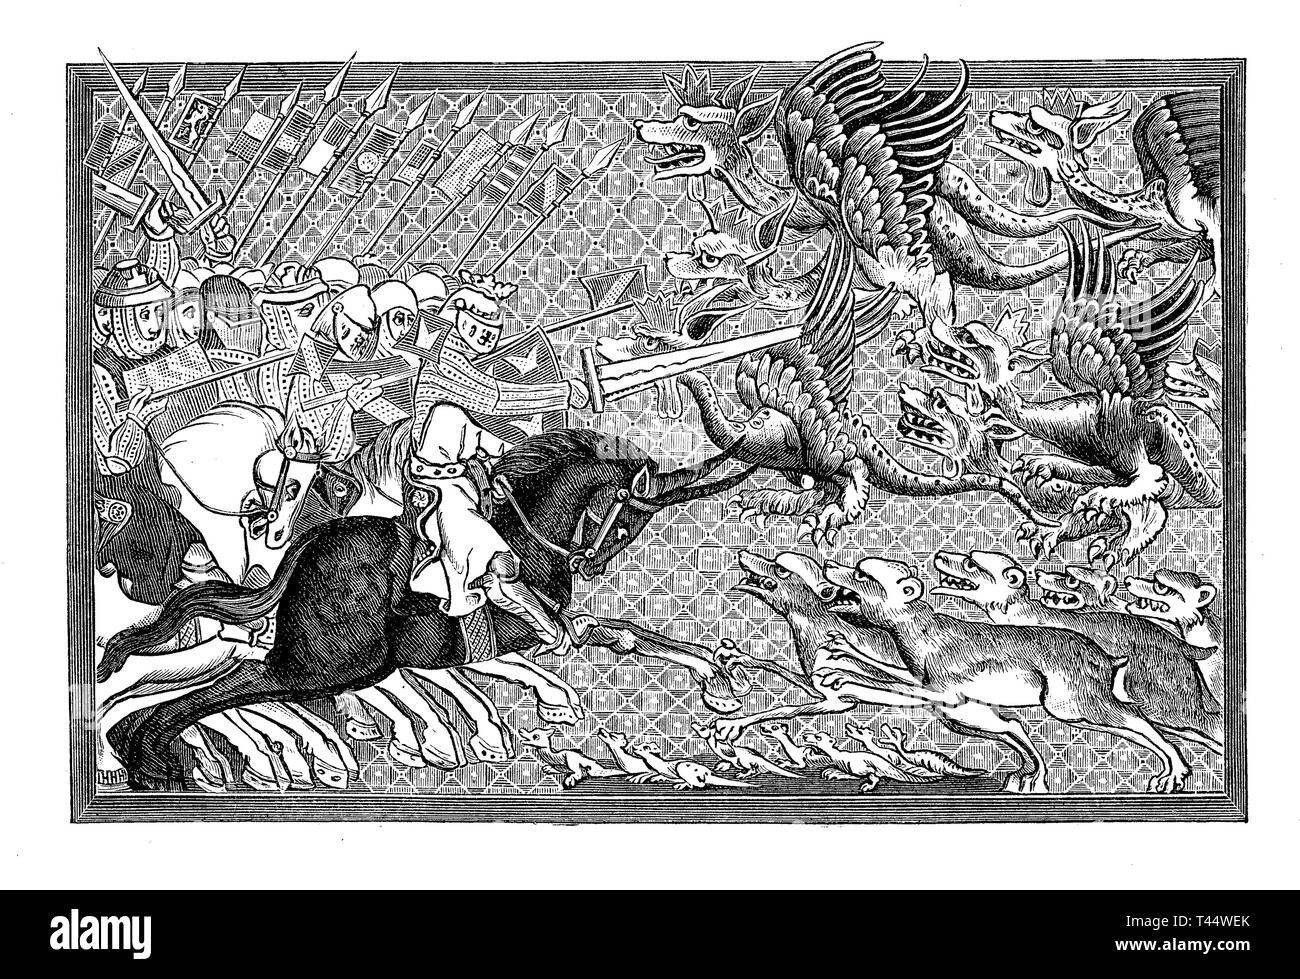 Alessandro il Grande in battaglia con draghi e altri animali fantastici, dopo una miniatura del XIII secolo Foto Stock